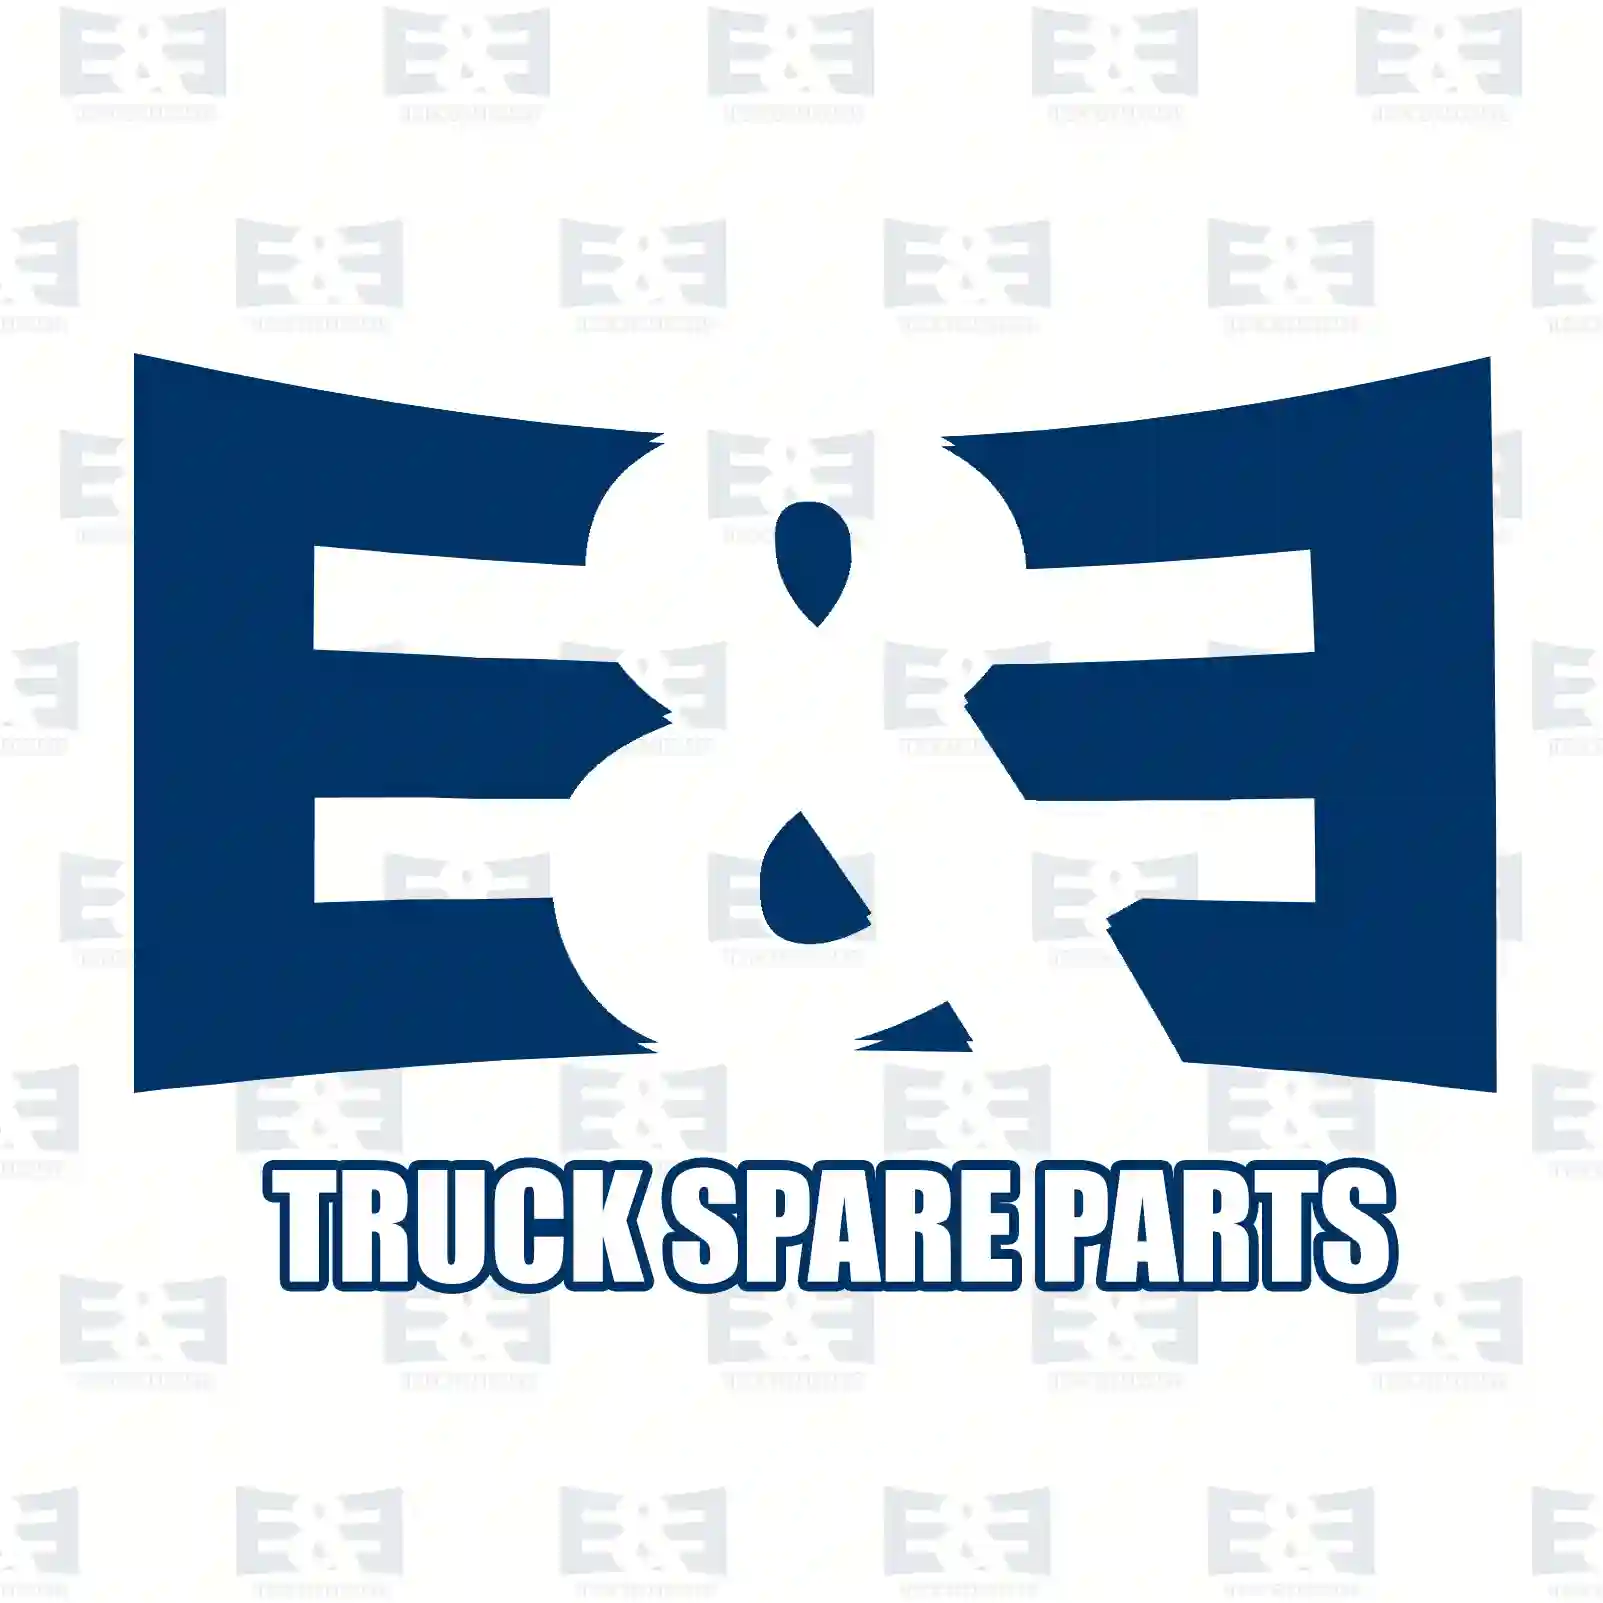 Load sensitive valve, 2E2296132, 1518121, 571994, 0014313312, 0014313512, 0024310512 ||  2E2296132 E&E Truck Spare Parts | Truck Spare Parts, Auotomotive Spare Parts Load sensitive valve, 2E2296132, 1518121, 571994, 0014313312, 0014313512, 0024310512 ||  2E2296132 E&E Truck Spare Parts | Truck Spare Parts, Auotomotive Spare Parts